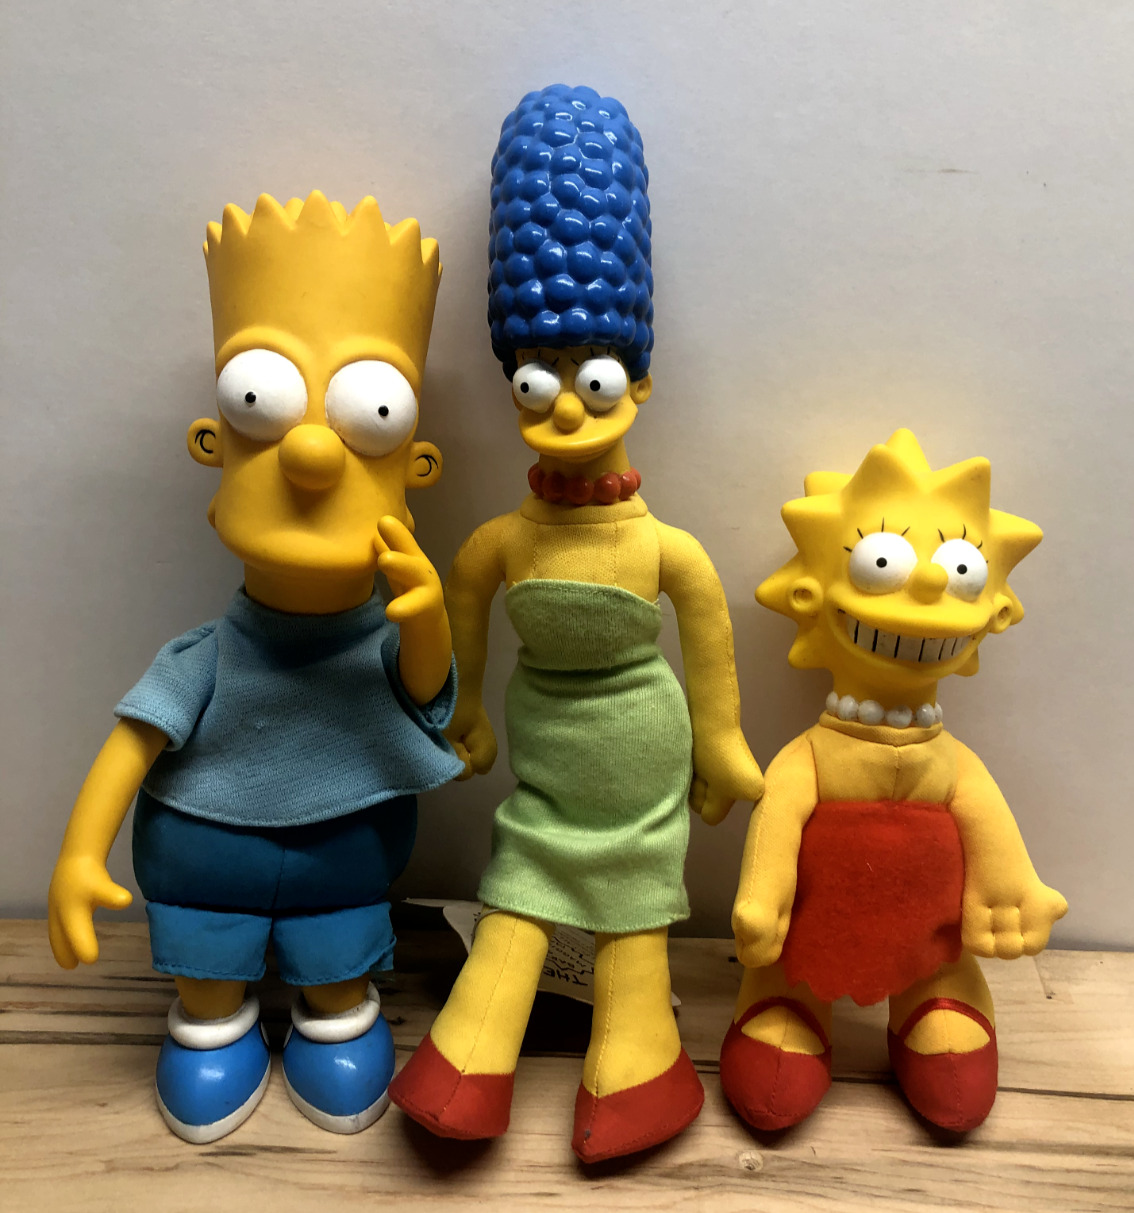 Vintage 1990 The Simpsons Plush Dolls, Bart Simpson, Lisa Simpson, Marge Simpson